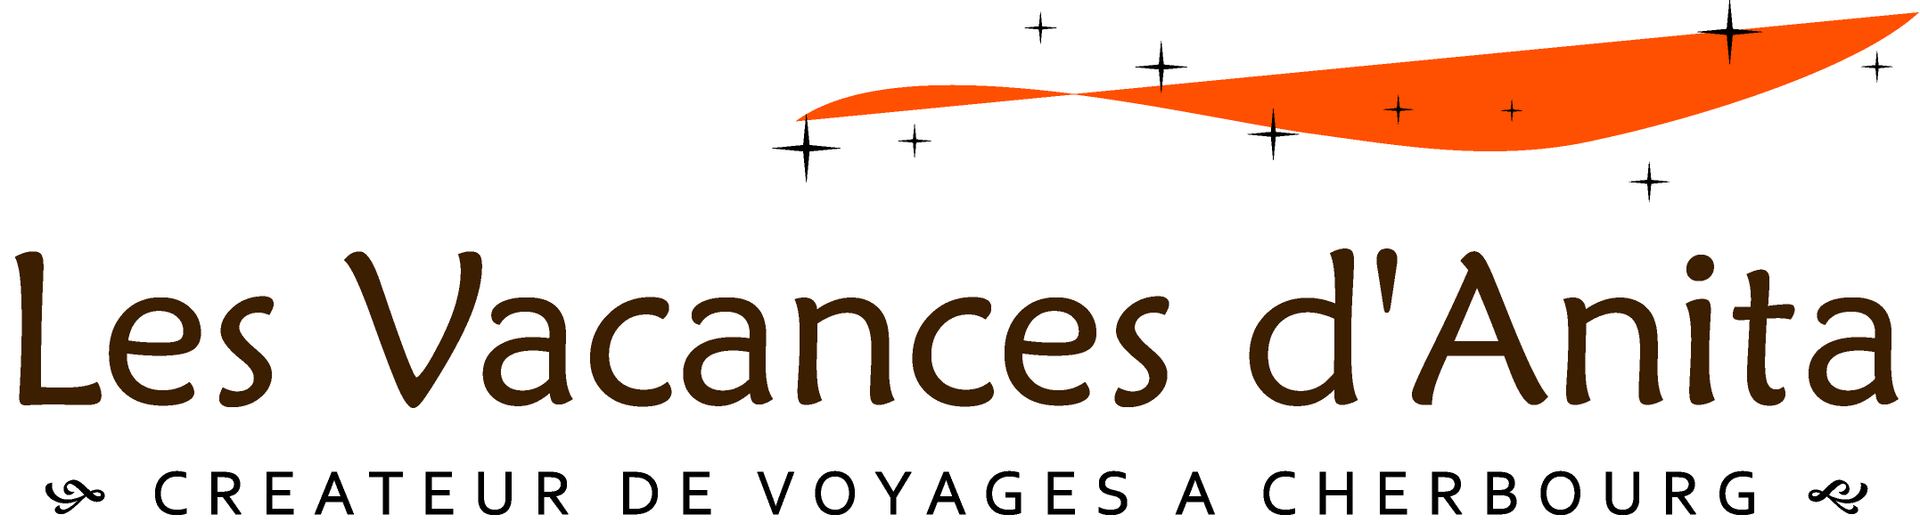 Logo Les Vacances d'Anita